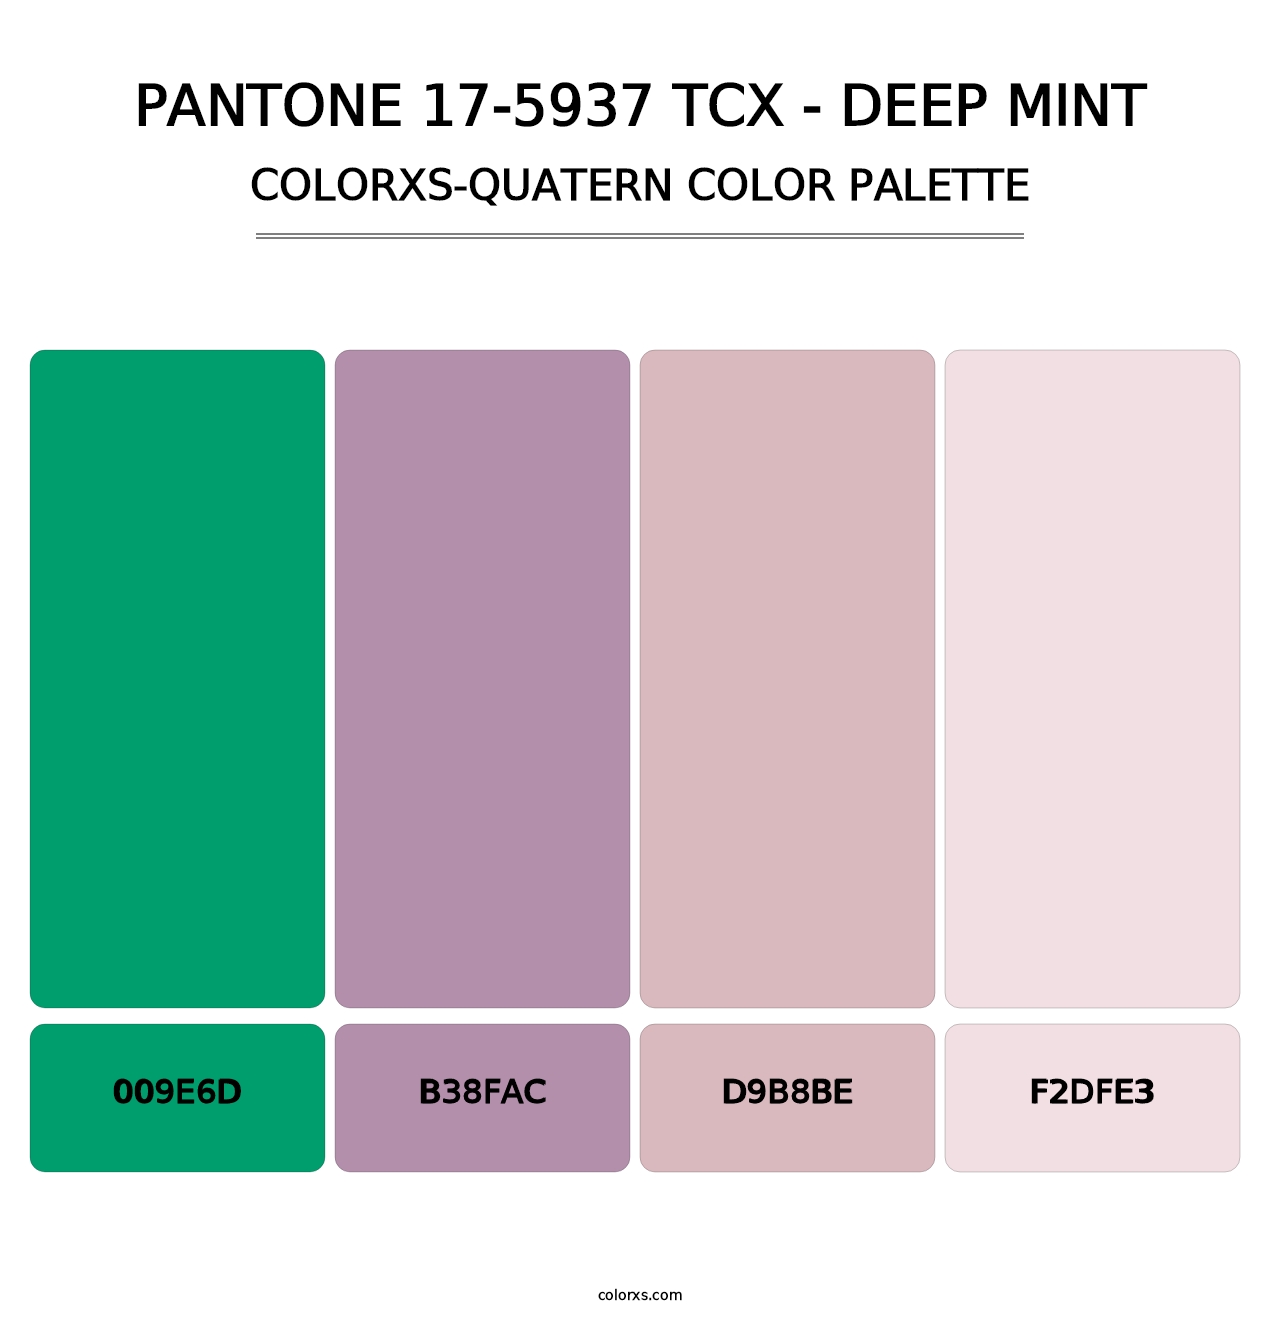 PANTONE 17-5937 TCX - Deep Mint - Colorxs Quatern Palette